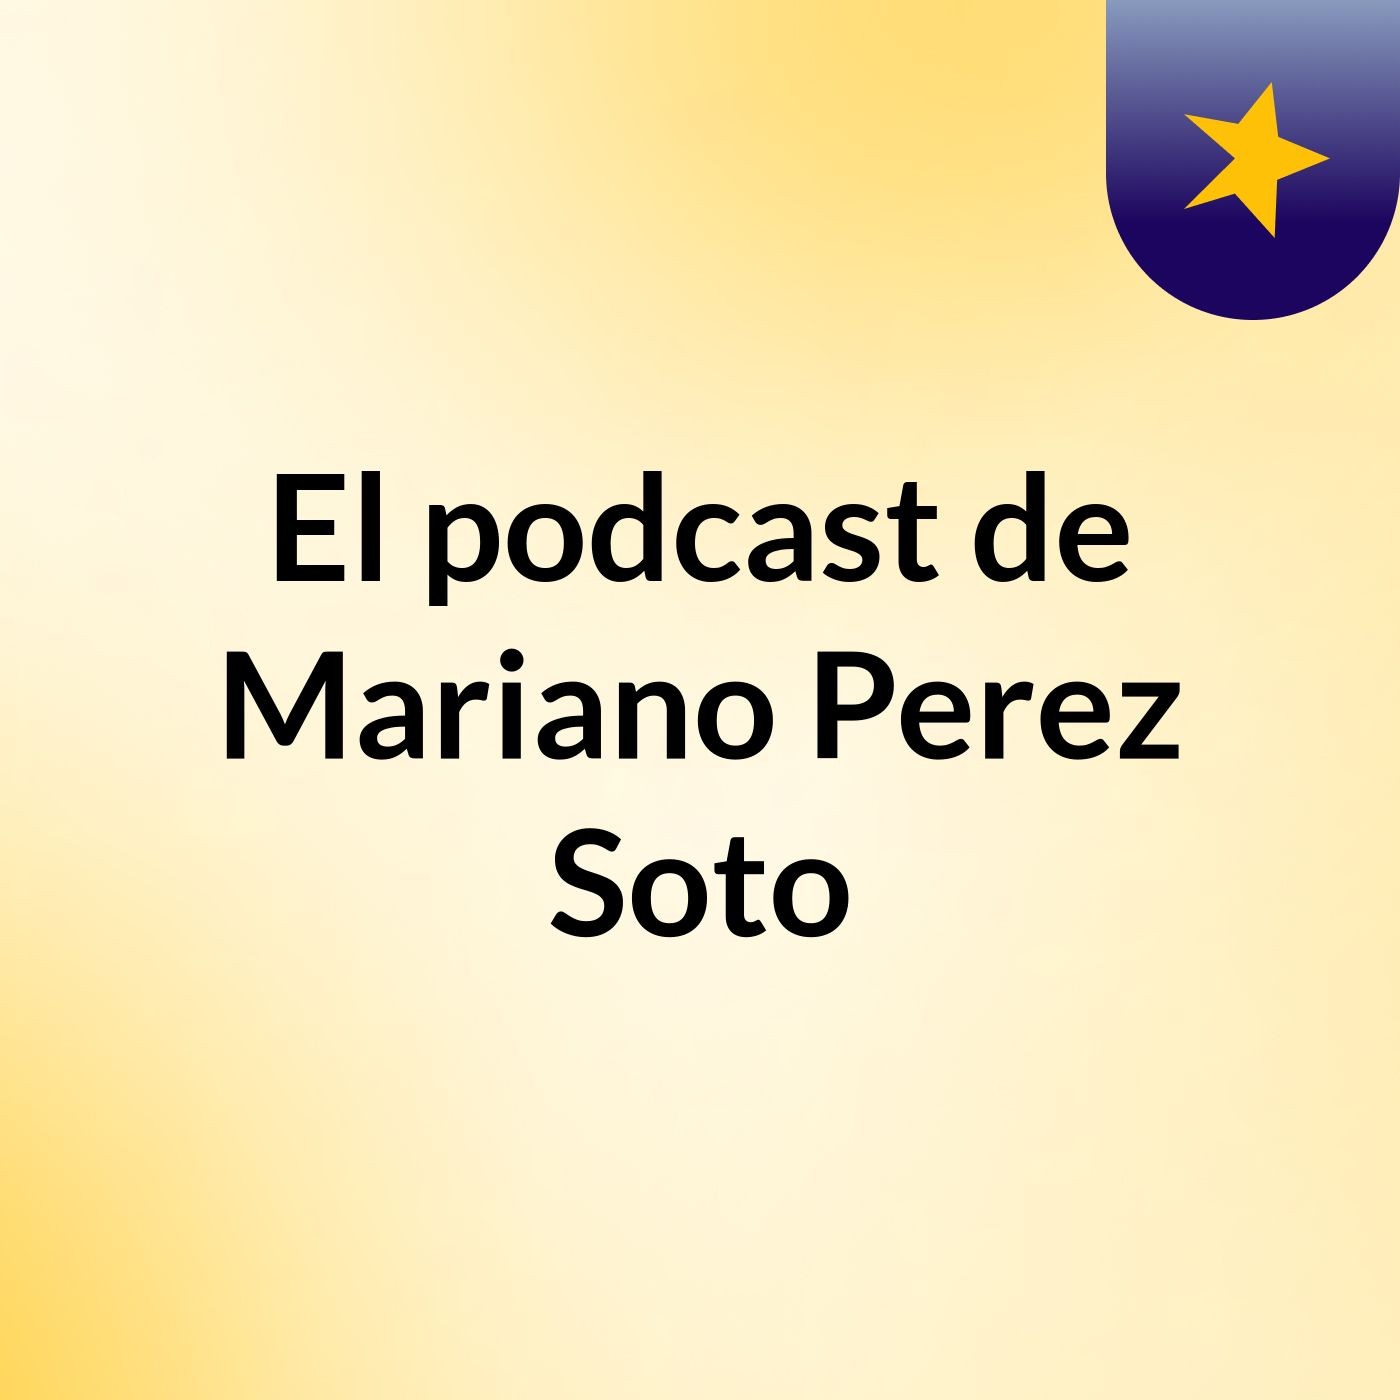 El podcast de Mariano Perez Soto